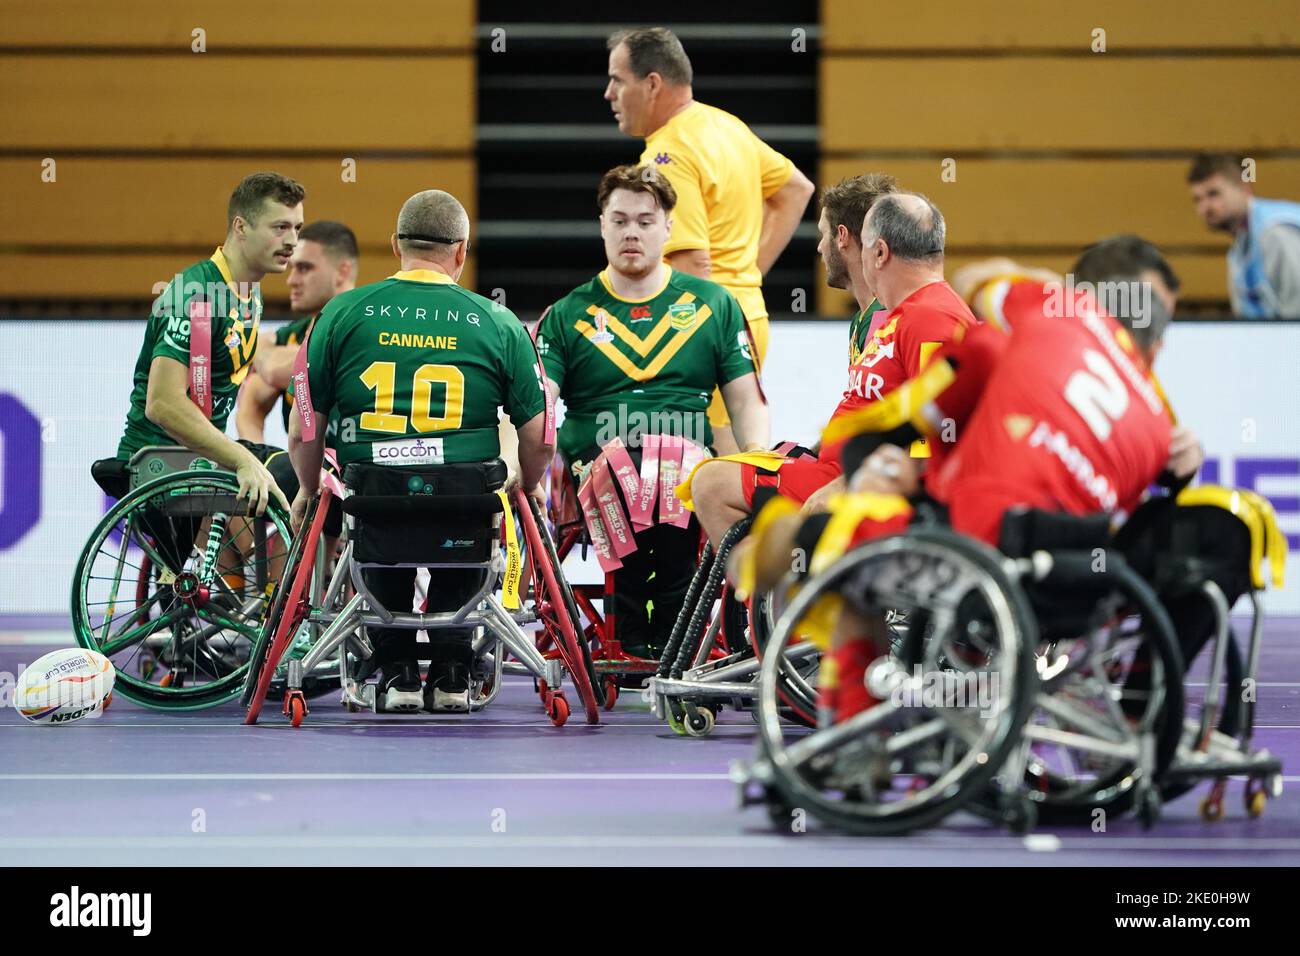 L'Australia festeggia dopo il gruppo di Coppa del mondo di Rugby Wheelchair League Una partita alla Copper Box Arena, Londra. Data immagine: Mercoledì 9 novembre 2022. Foto Stock